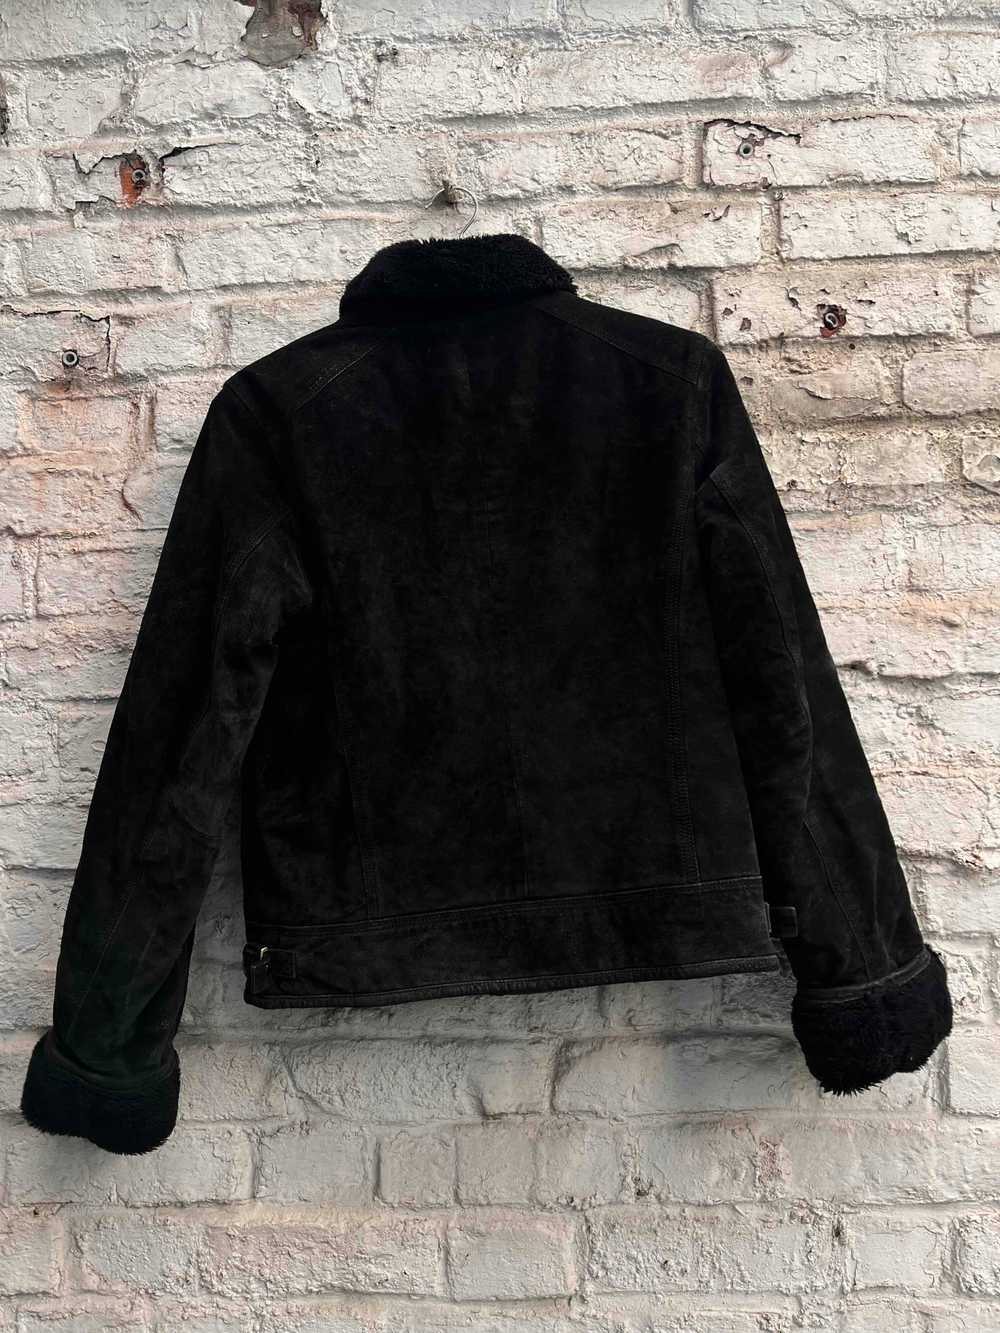 NafNaf jacket - NafNaf leather jacket Perfect for… - image 4